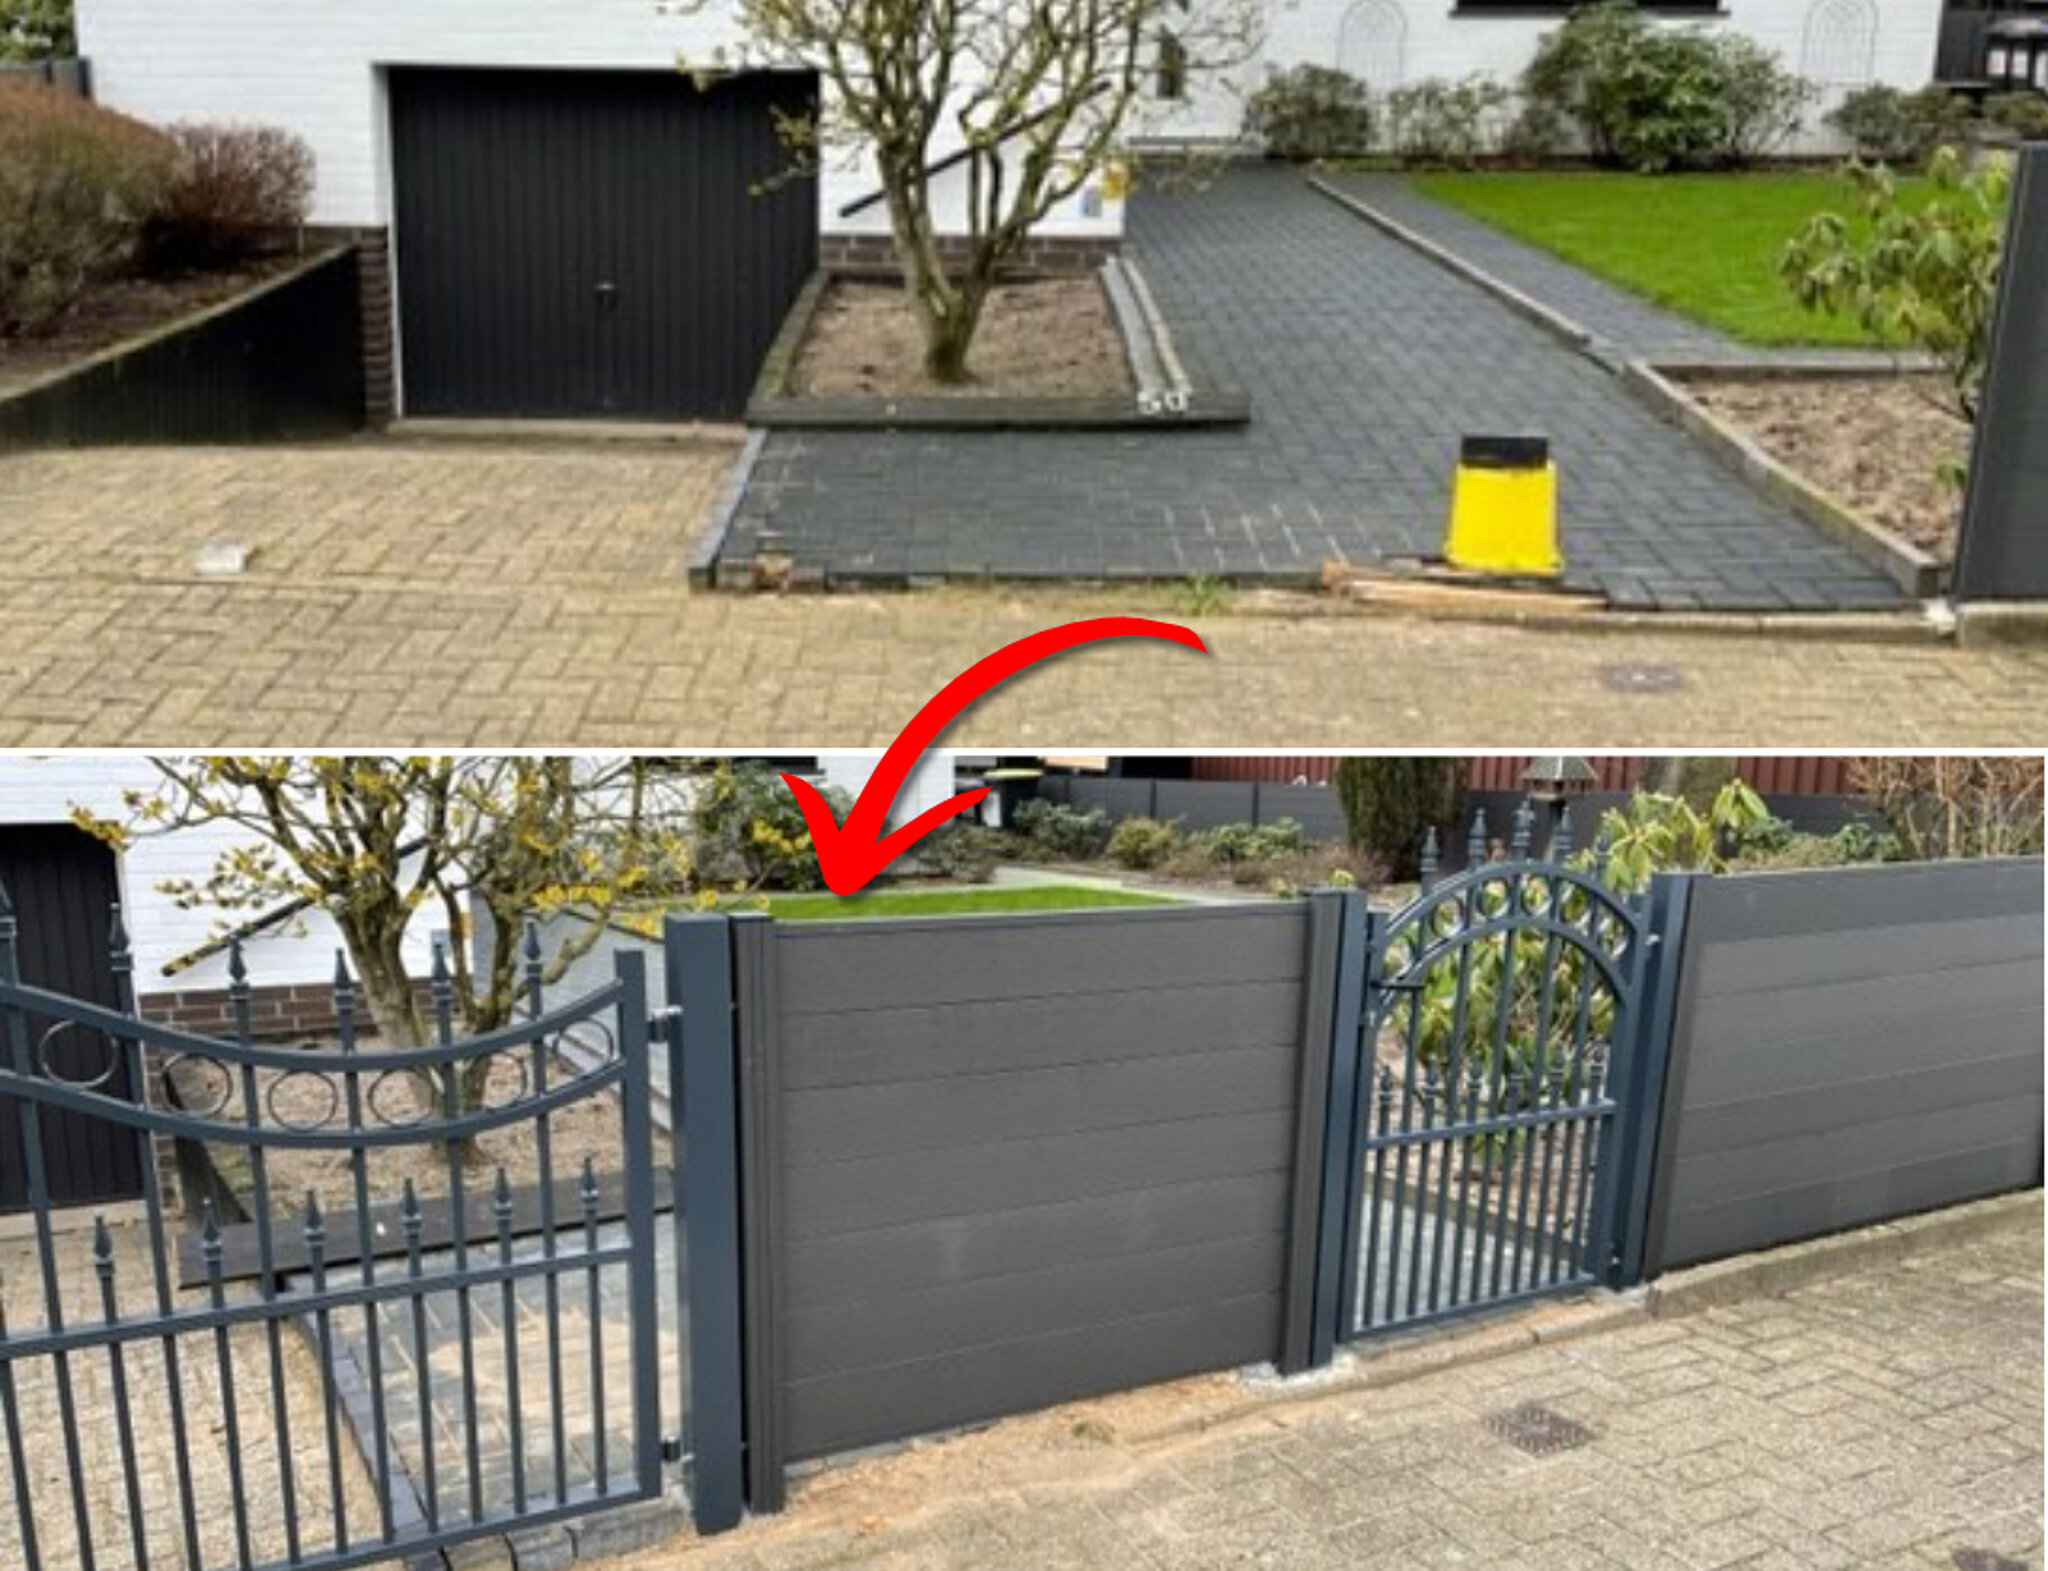 Vorher und nachher Bild eines Grundstücks mit neuem Zaun und Gartentor